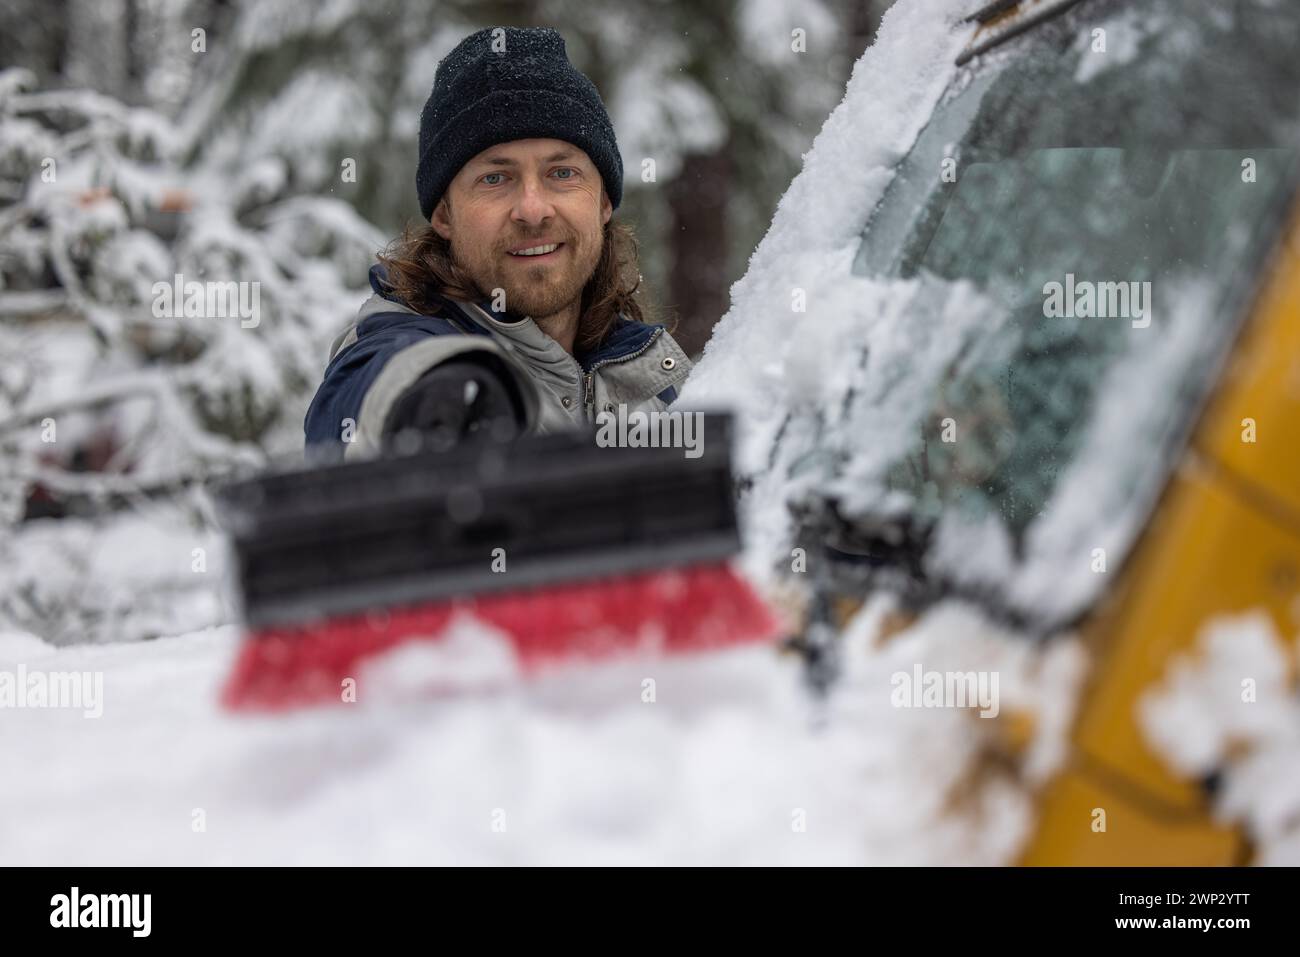 Ein Mann lächelt, während er Schnee von einem Auto schiebt. Die Szene spielt in einer verschneiten Umgebung, und der Mann trägt einen schwarzen Hut Stockfoto